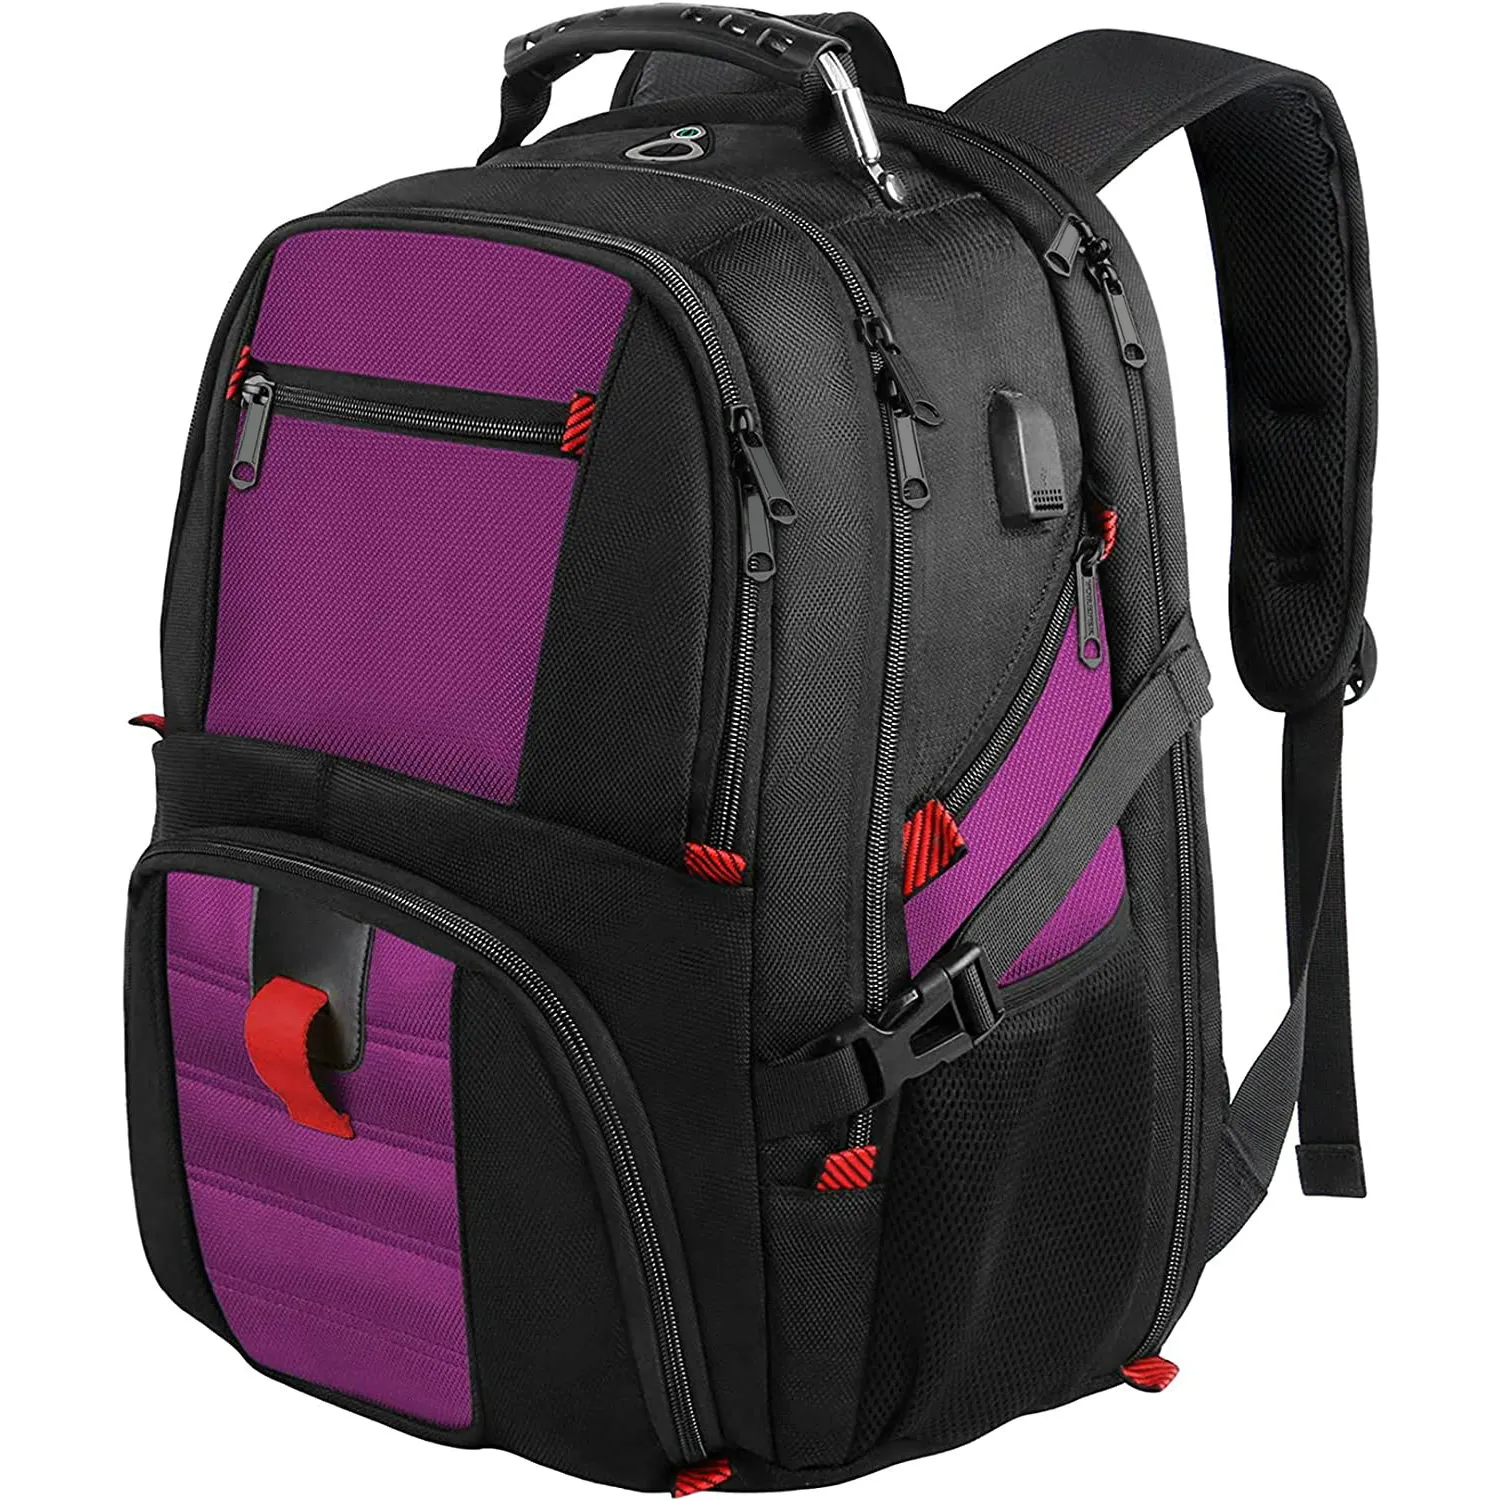 40L de color multi uso al aire libre de los hombres de deportes grandes duro bolsa con puerto USB y auriculares agujero portátil mochila senderismo